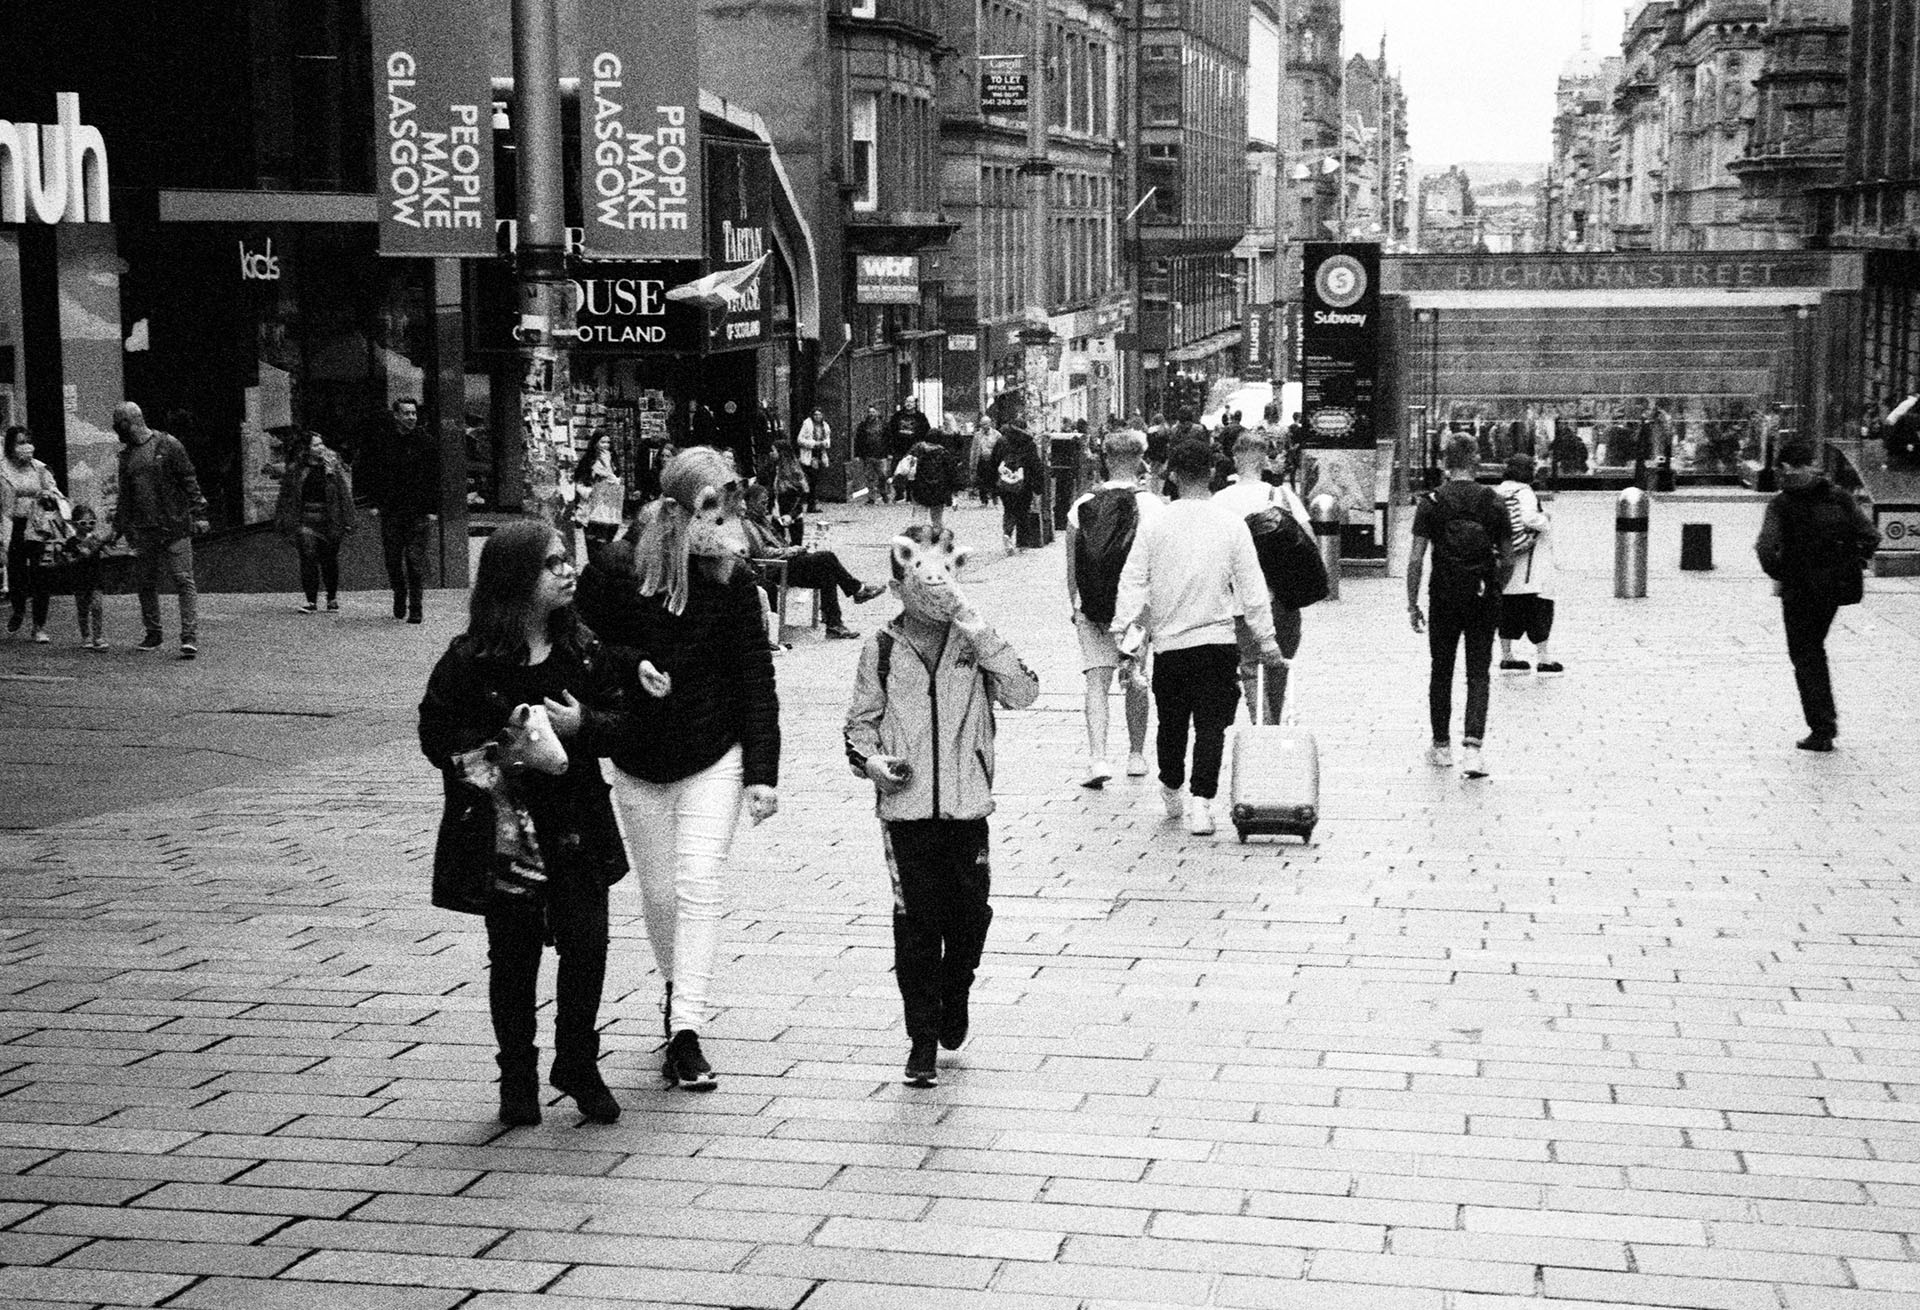 Glasgow street 35mm